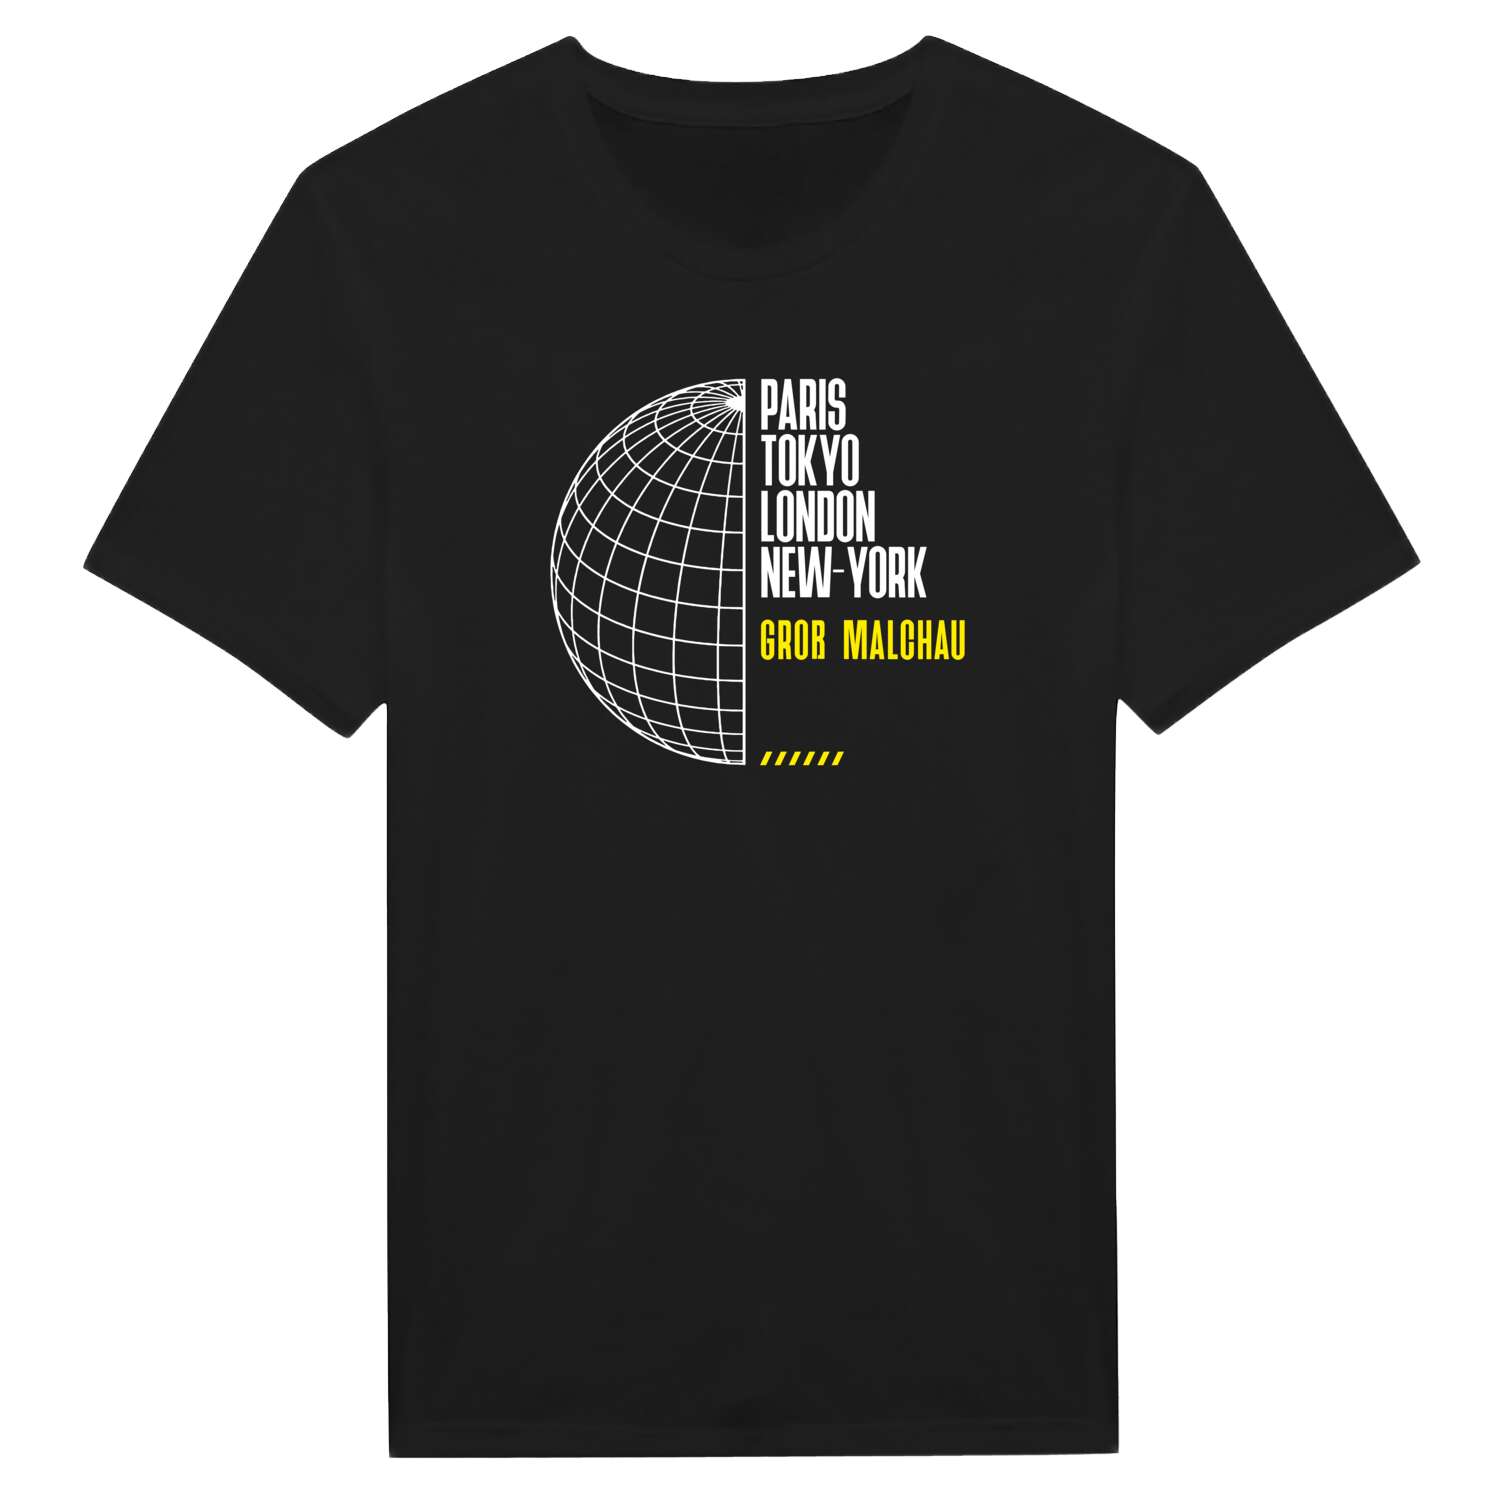 Groß Malchau T-Shirt »Paris Tokyo London«